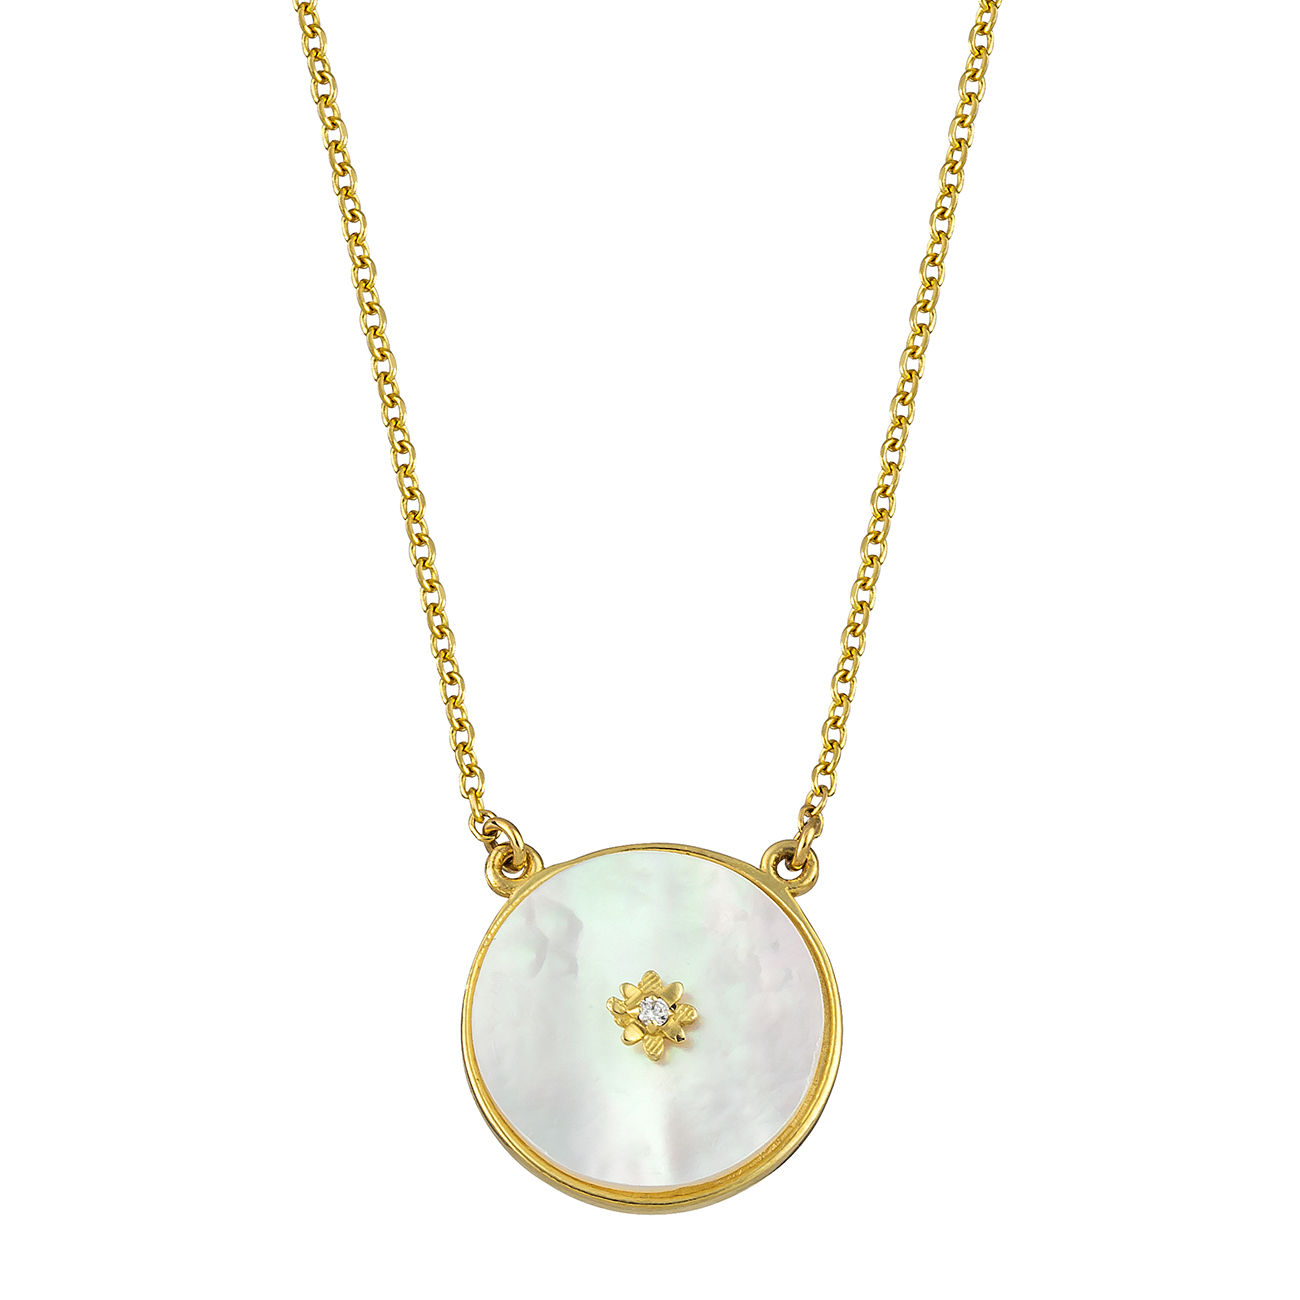 Χρυσό κολιέ με κλασική αλυσίδα και κρεμαστό μενταγιόν σε κυκλικό σχήμα. Το μενταγιόν αποτελείται από mother of pearl σε χρυσό πλαίσιο.